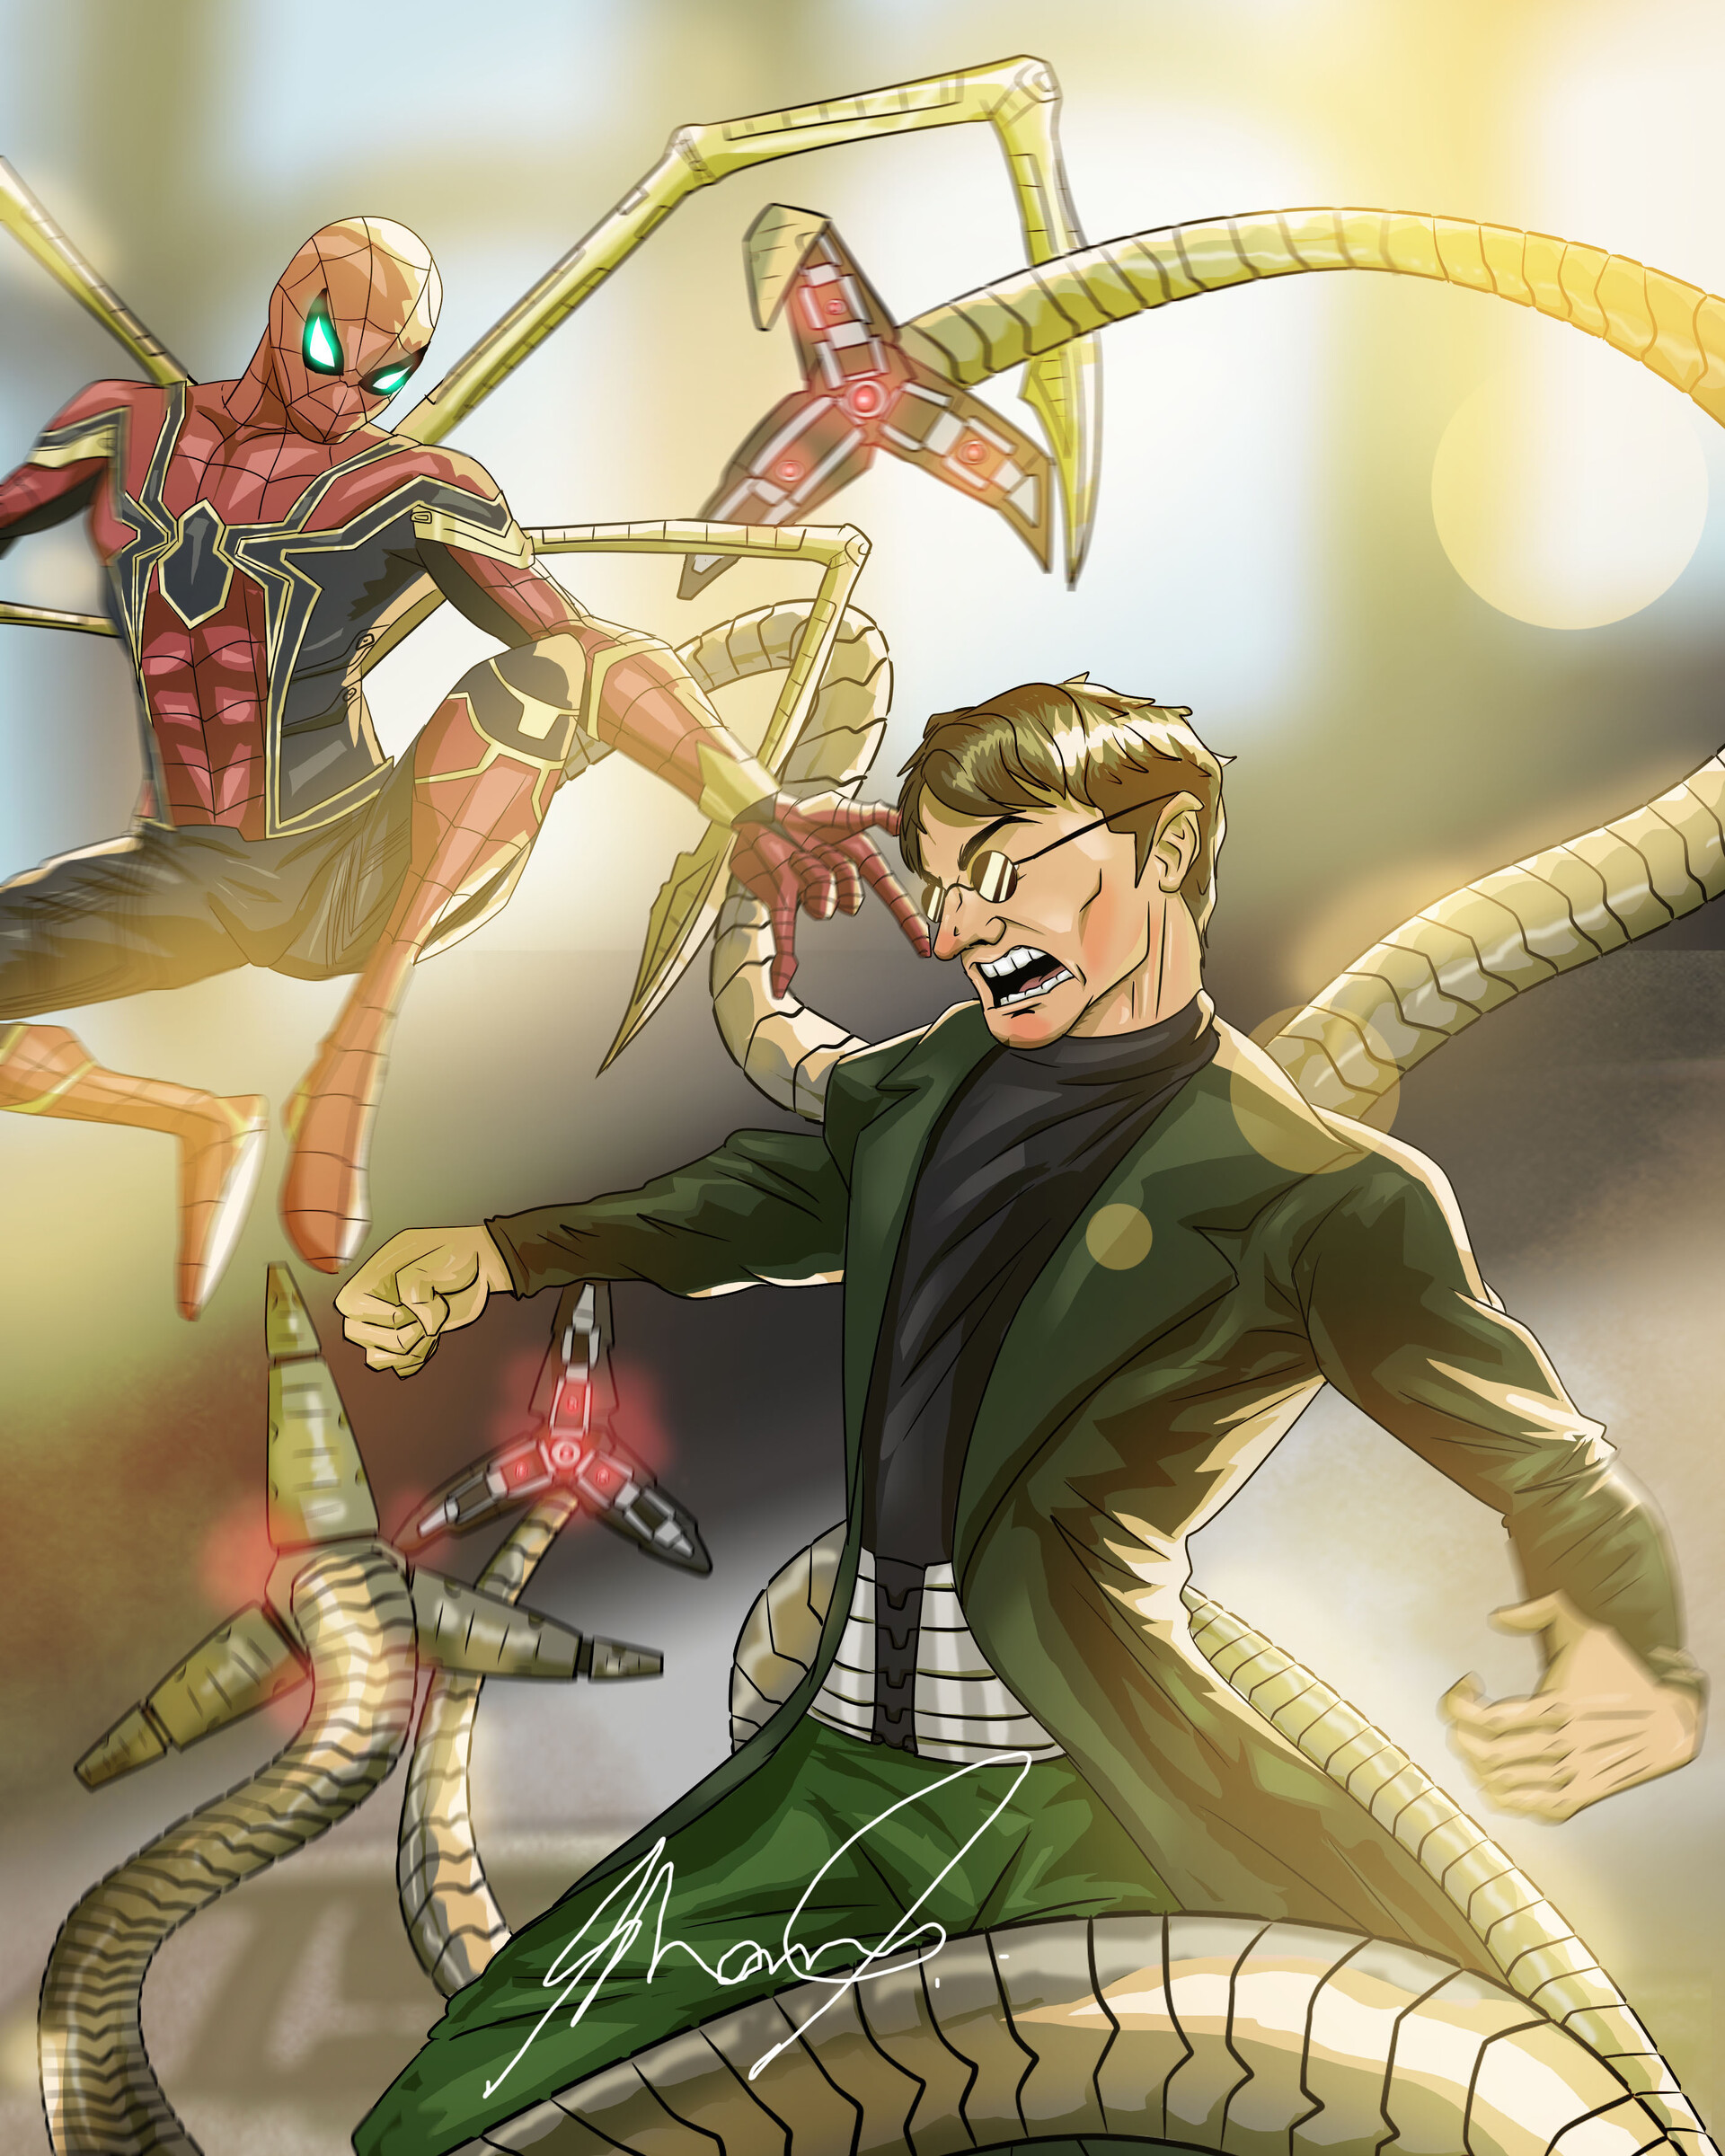 Marvel - Spider-Man vs Doctor Octopus by DarthLeonhart on DeviantArt